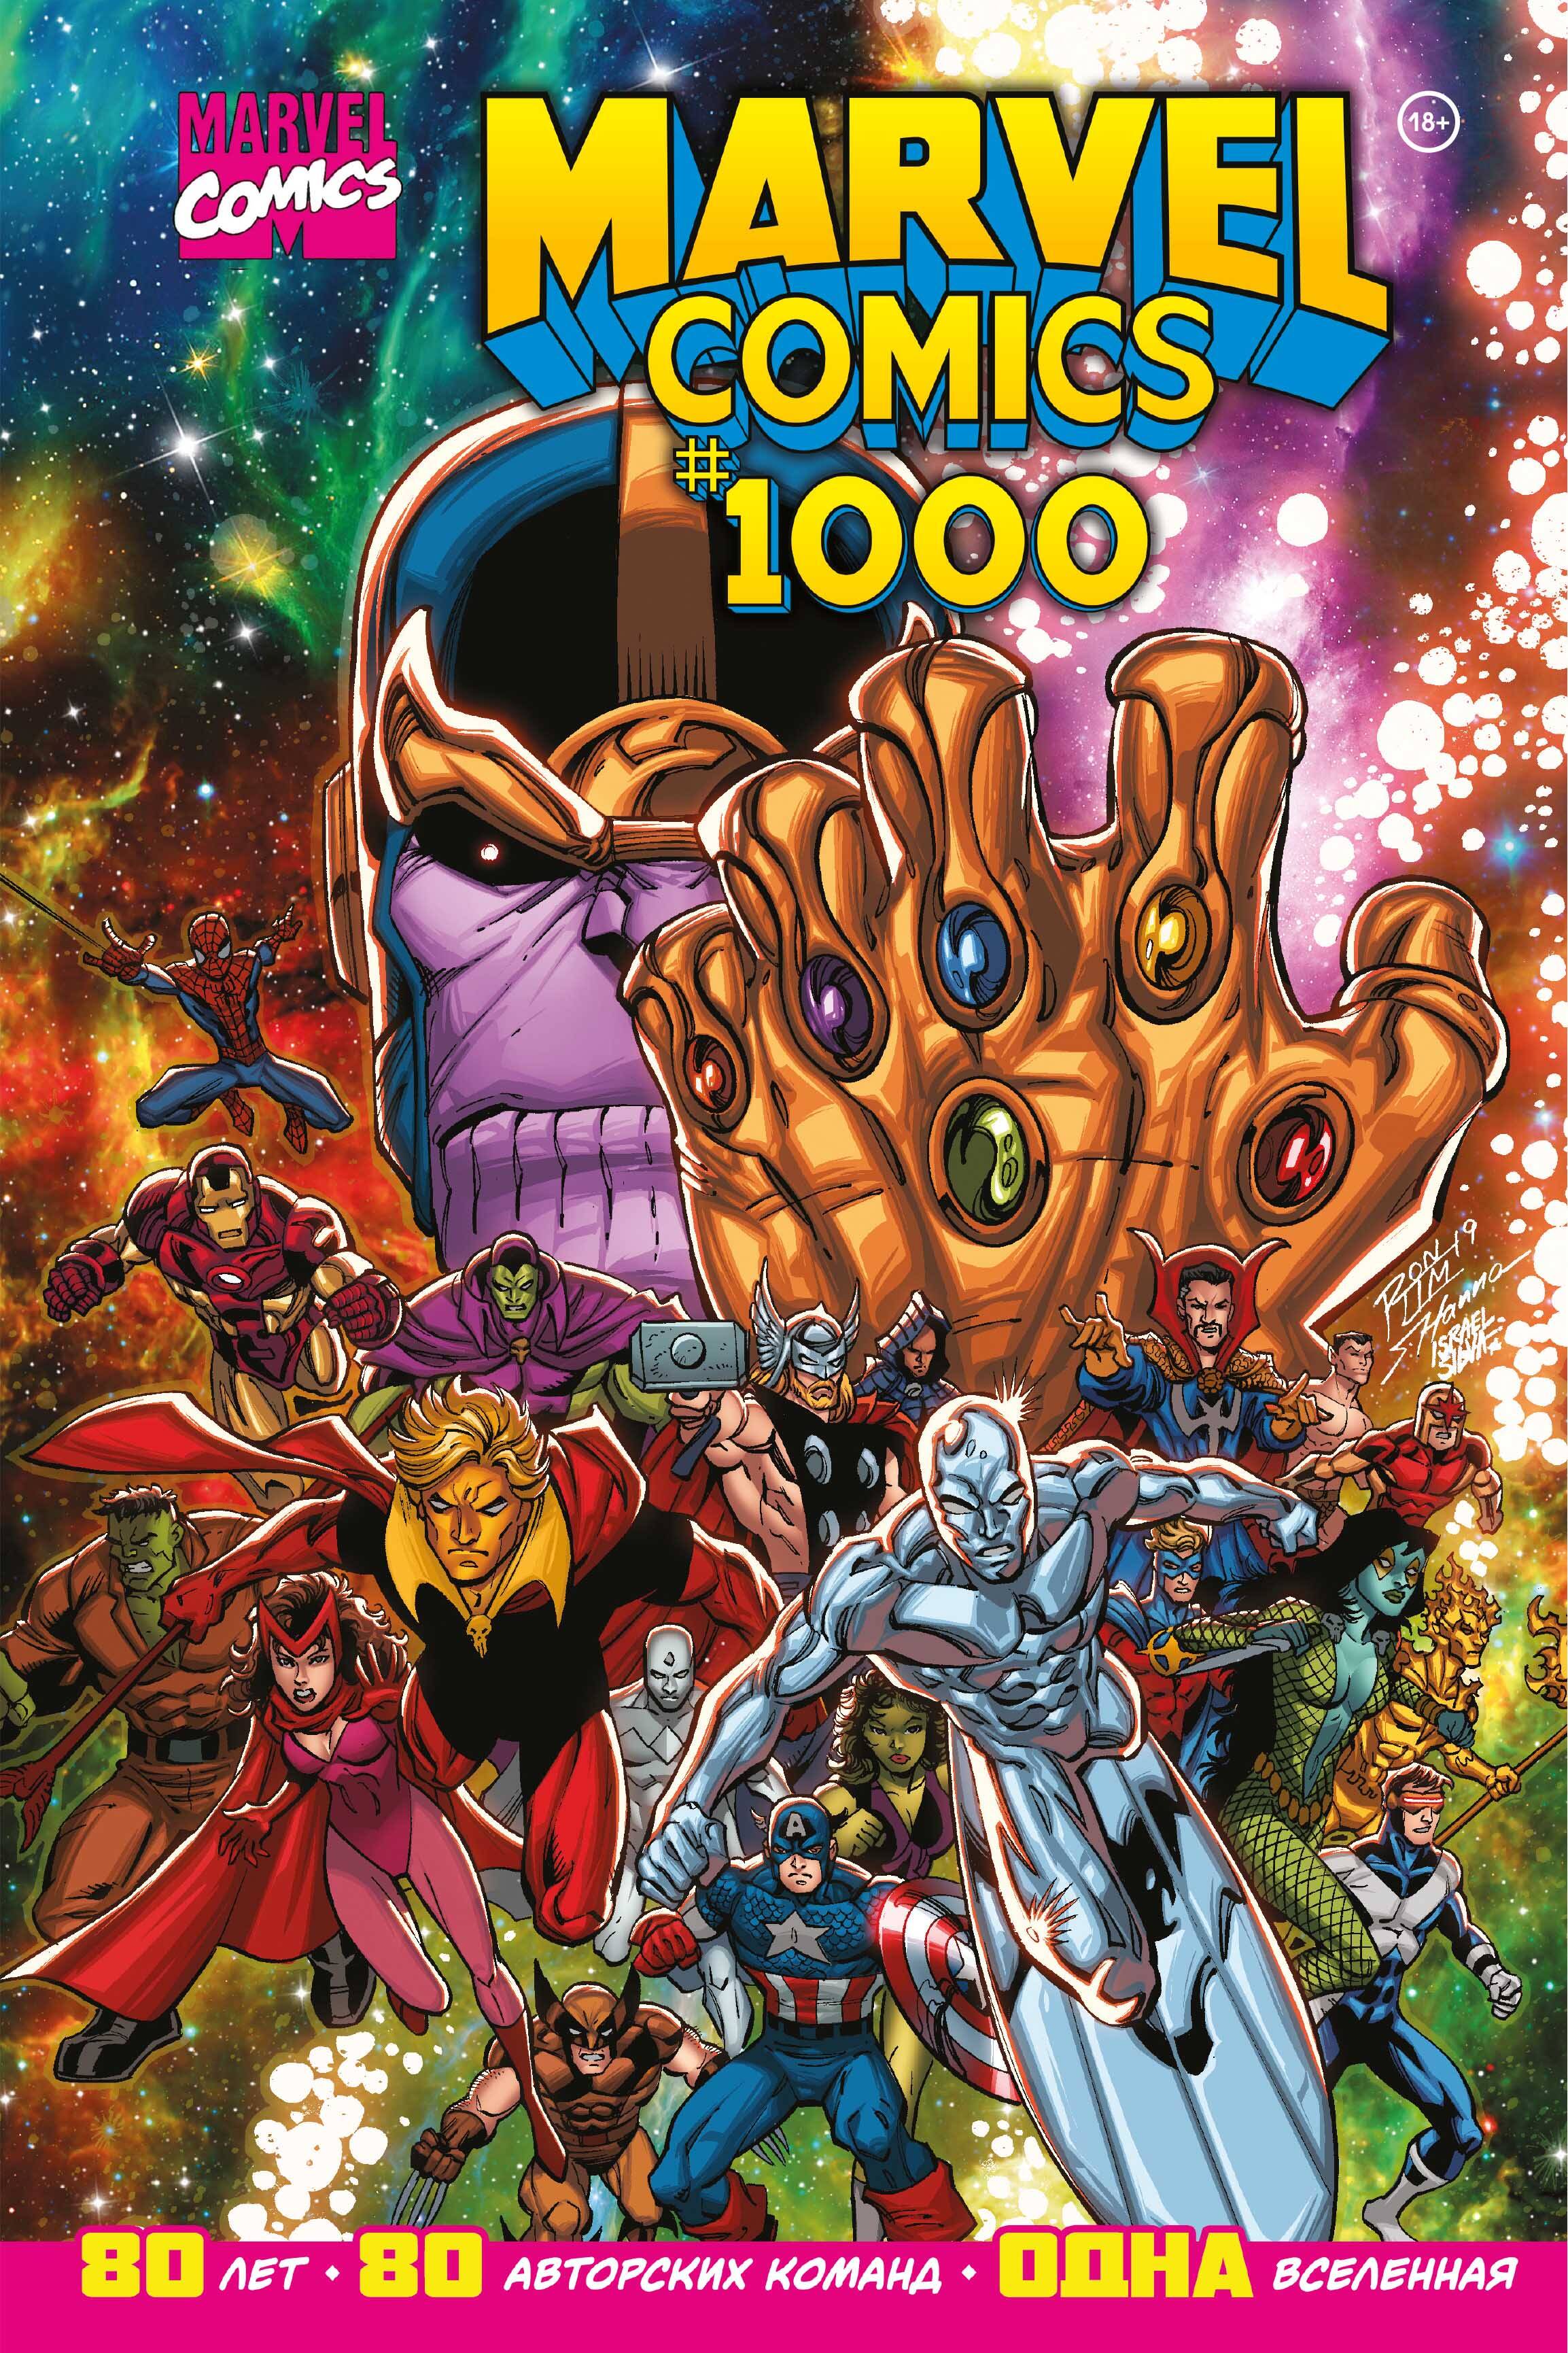 Юинг Эл - Marvel Comics #1000. Золотая коллекция Marvel